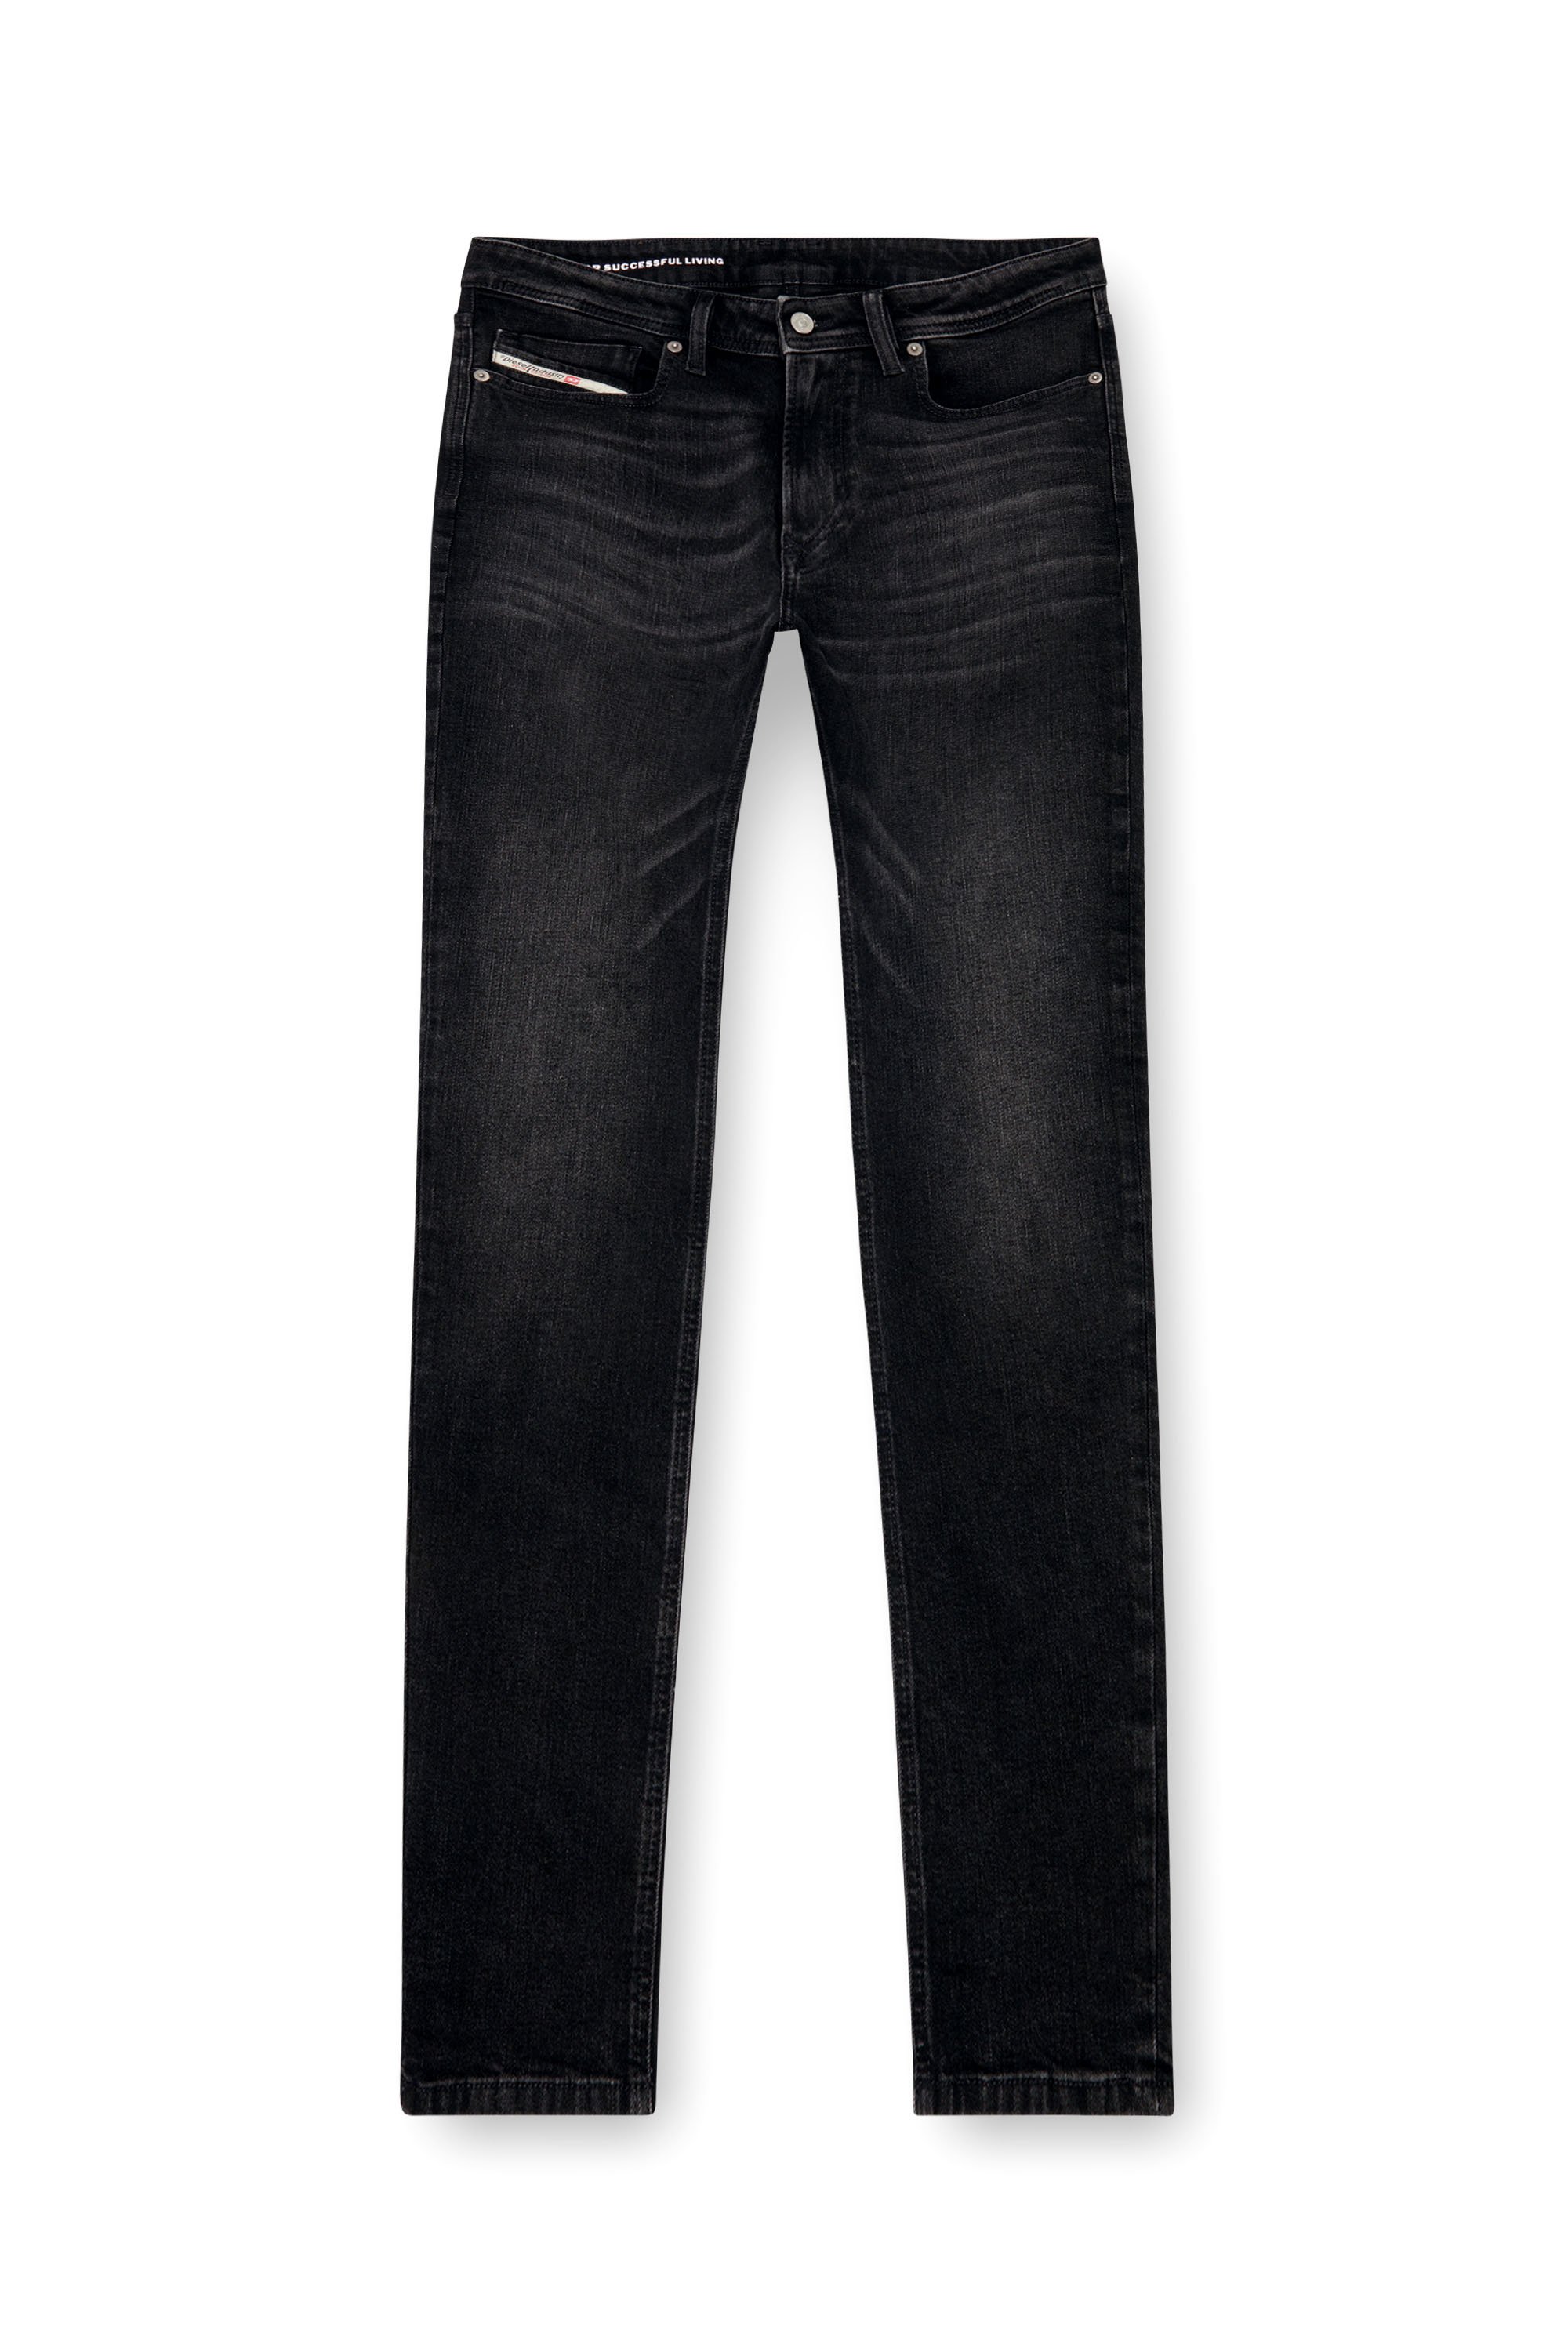 Diesel - Skinny Jeans 1979 Sleenker 0GRDA, Hombre Skinny Jeans - 1979 Sleenker in Negro - Image 3